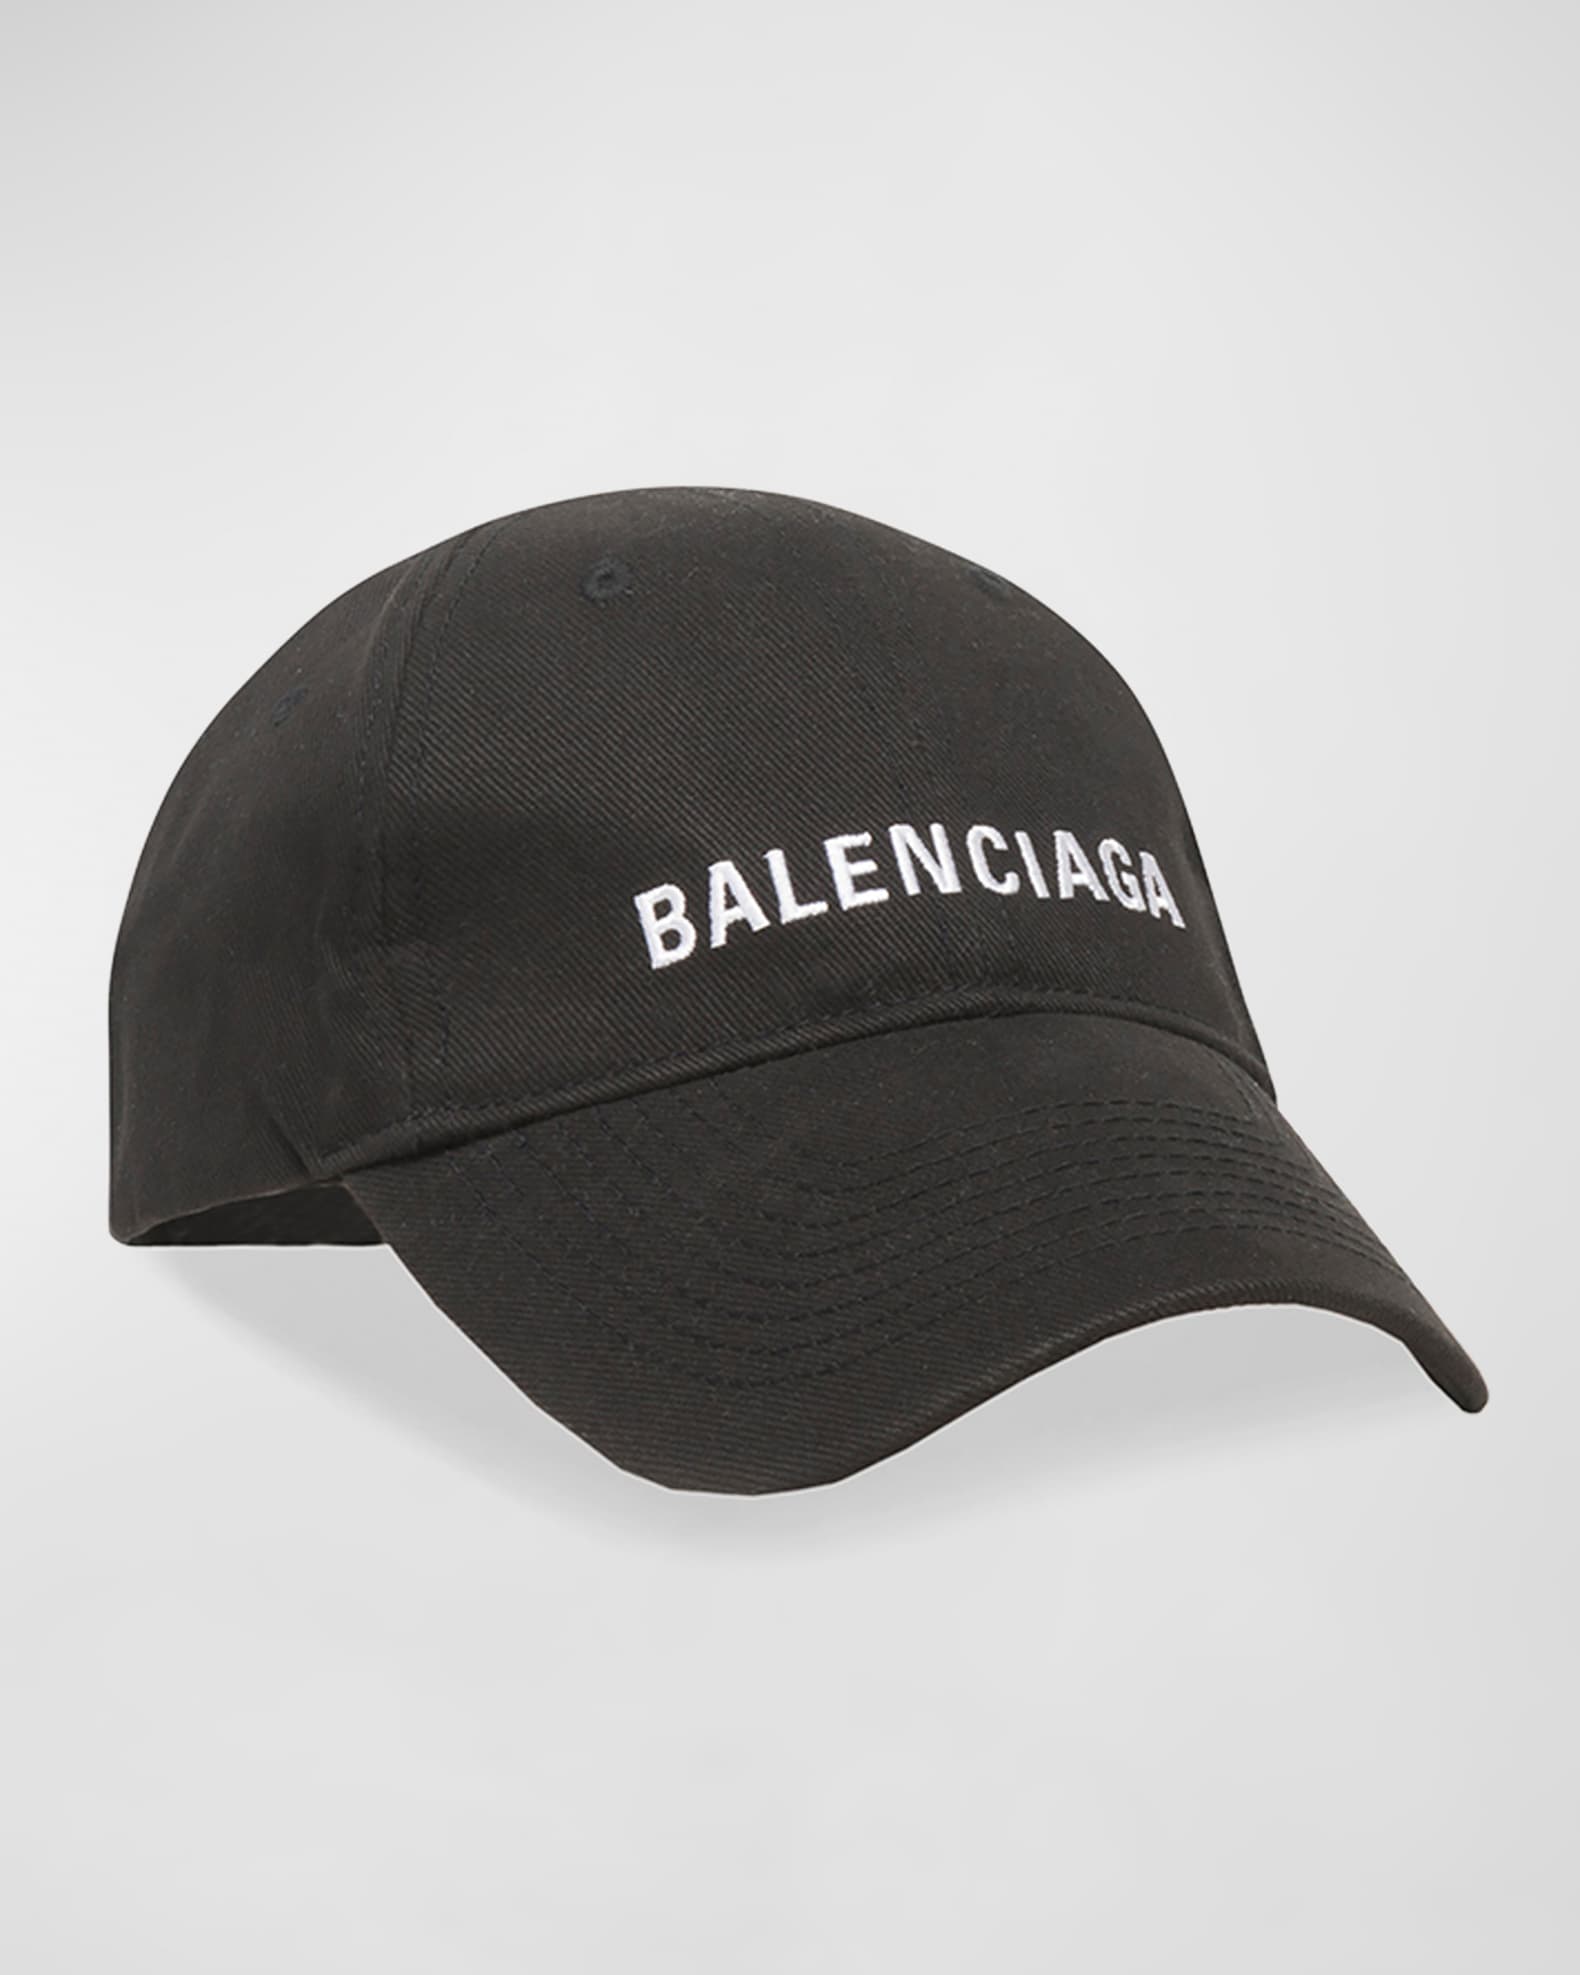 Balenciaga Balenciaga Cap | Neiman